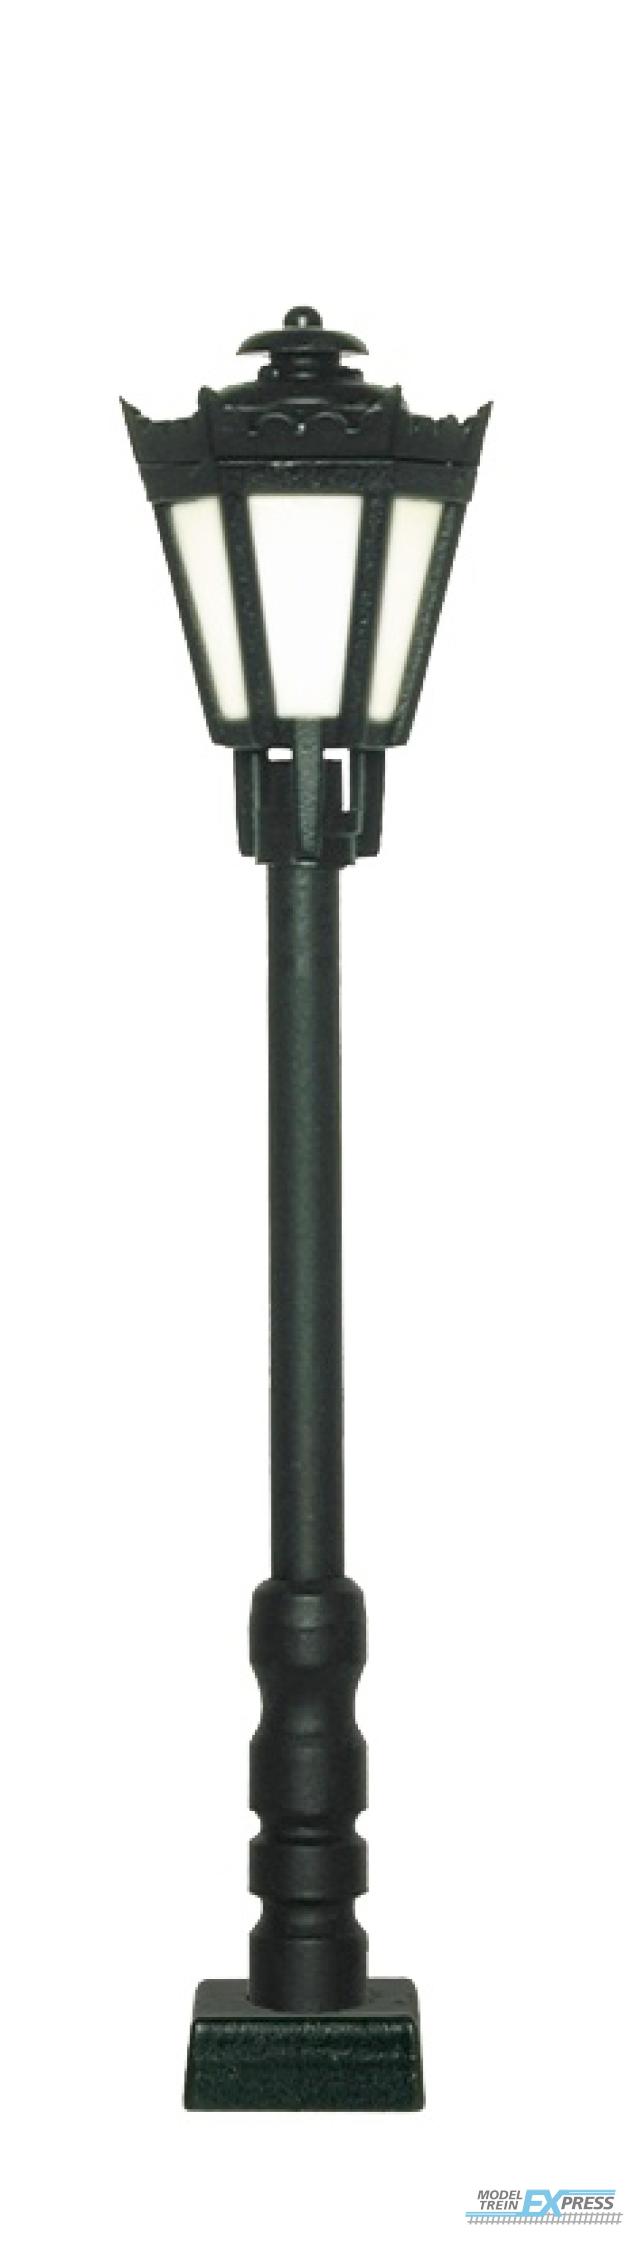 Viessmann 60701 H0 Parklaterne schwarz mit Kontaktstecksockel,LED warmweiß